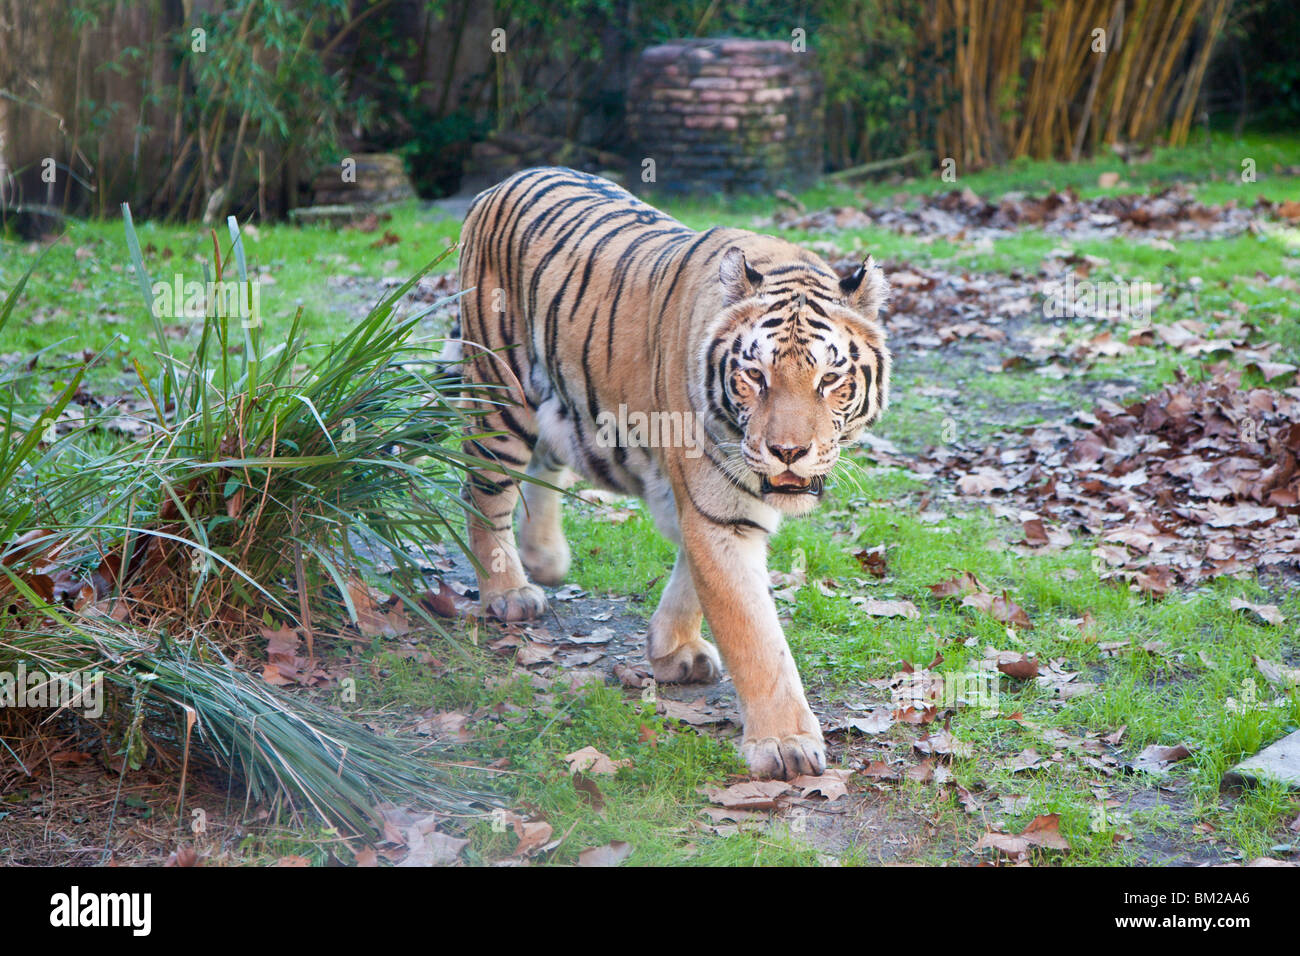 Orlando, FL - Jan 2009 - tigre asiatica (Panthera tigris) passi nel display al Regno degli Animali di Disney in Orlando Florida Foto Stock